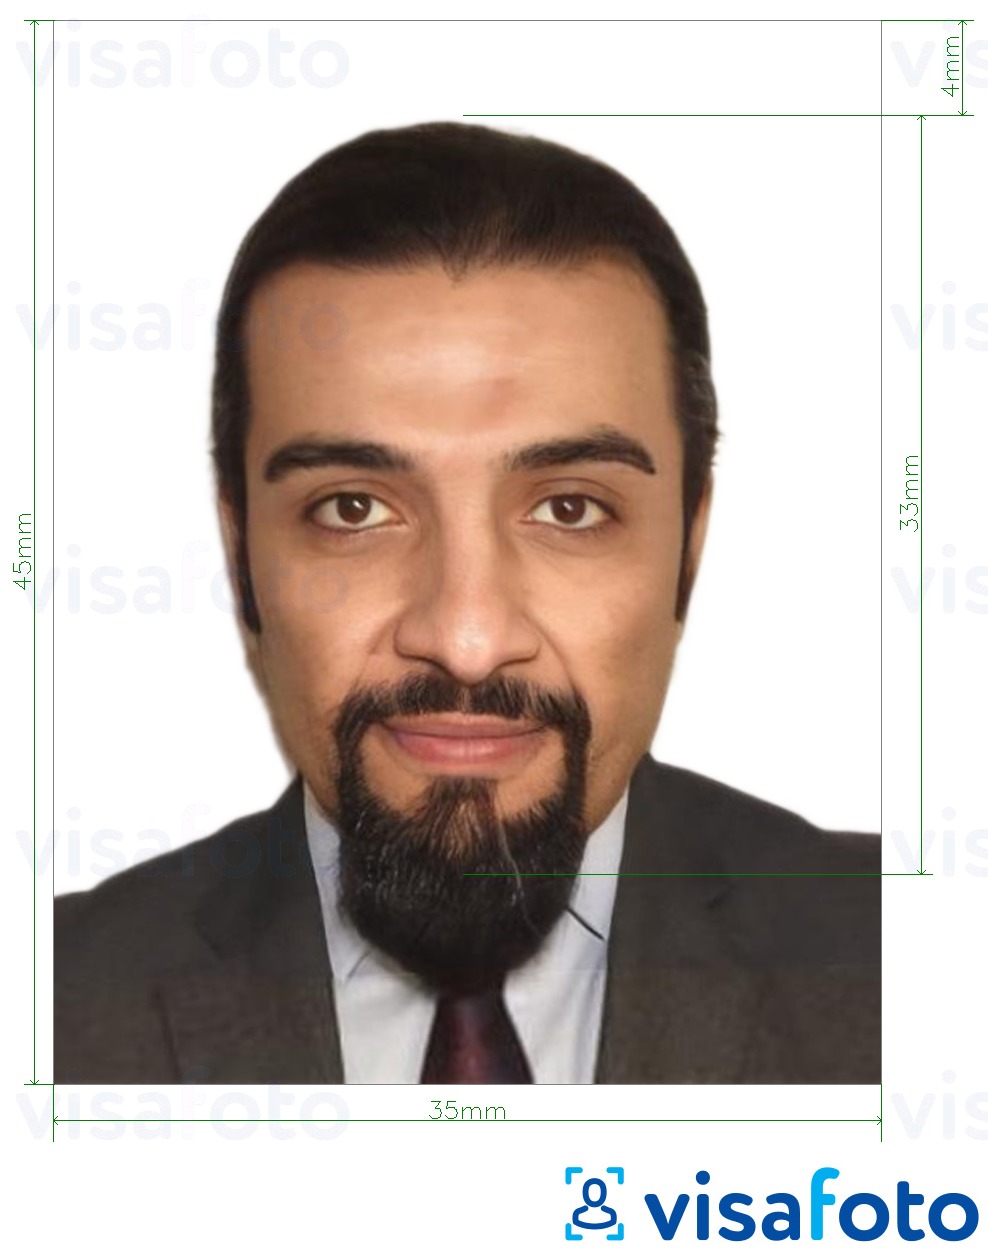 نمونه ی یک عکس برای پاسپورت تونس 3.5x4.5 سانتی متر (35x45 میلی متر) با مشخصات دقیق